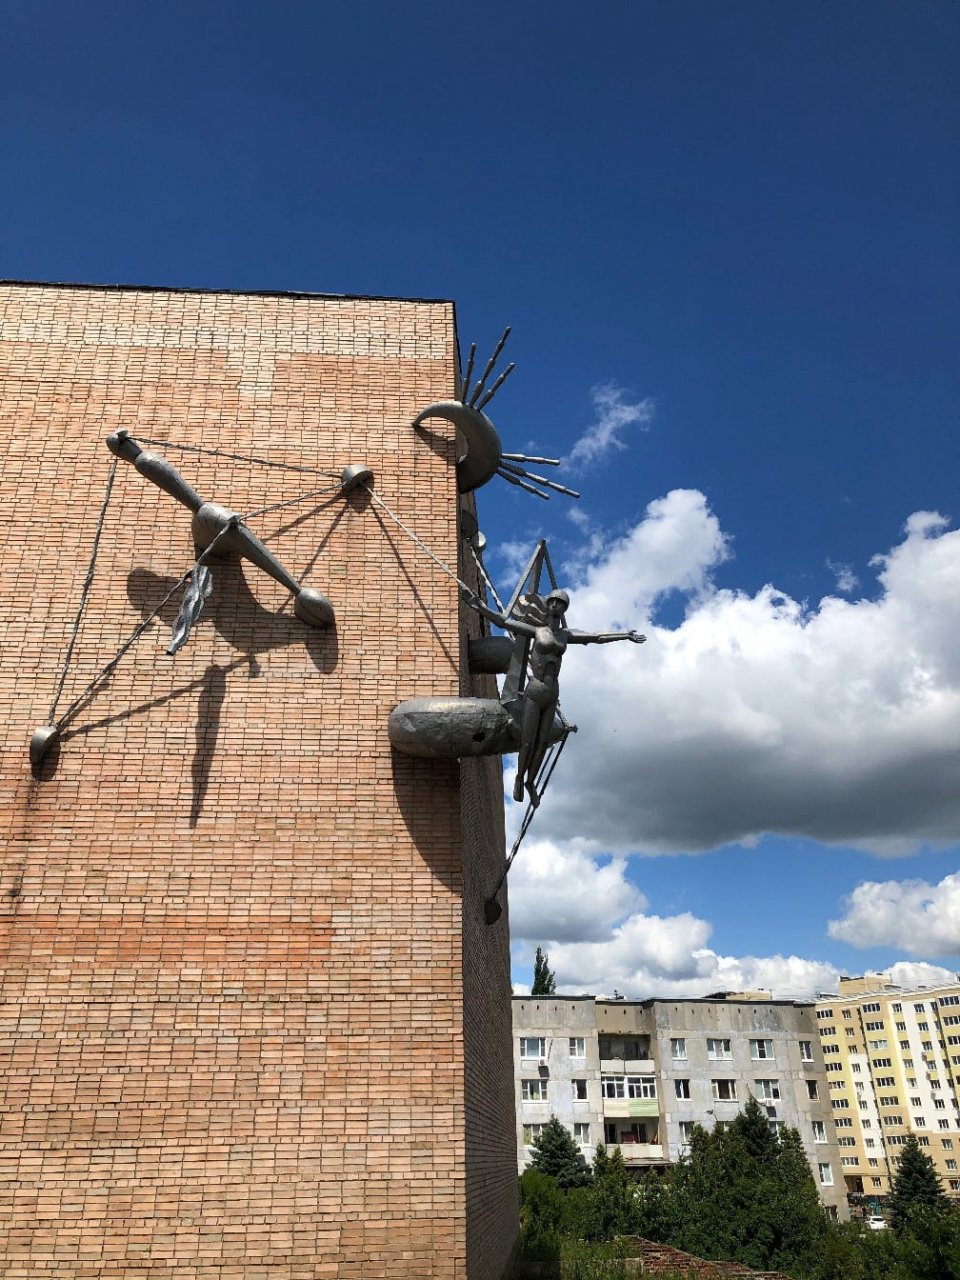 Строителям мешает скульптура на фасаде ДК Птицеводов - ее хотят убрать